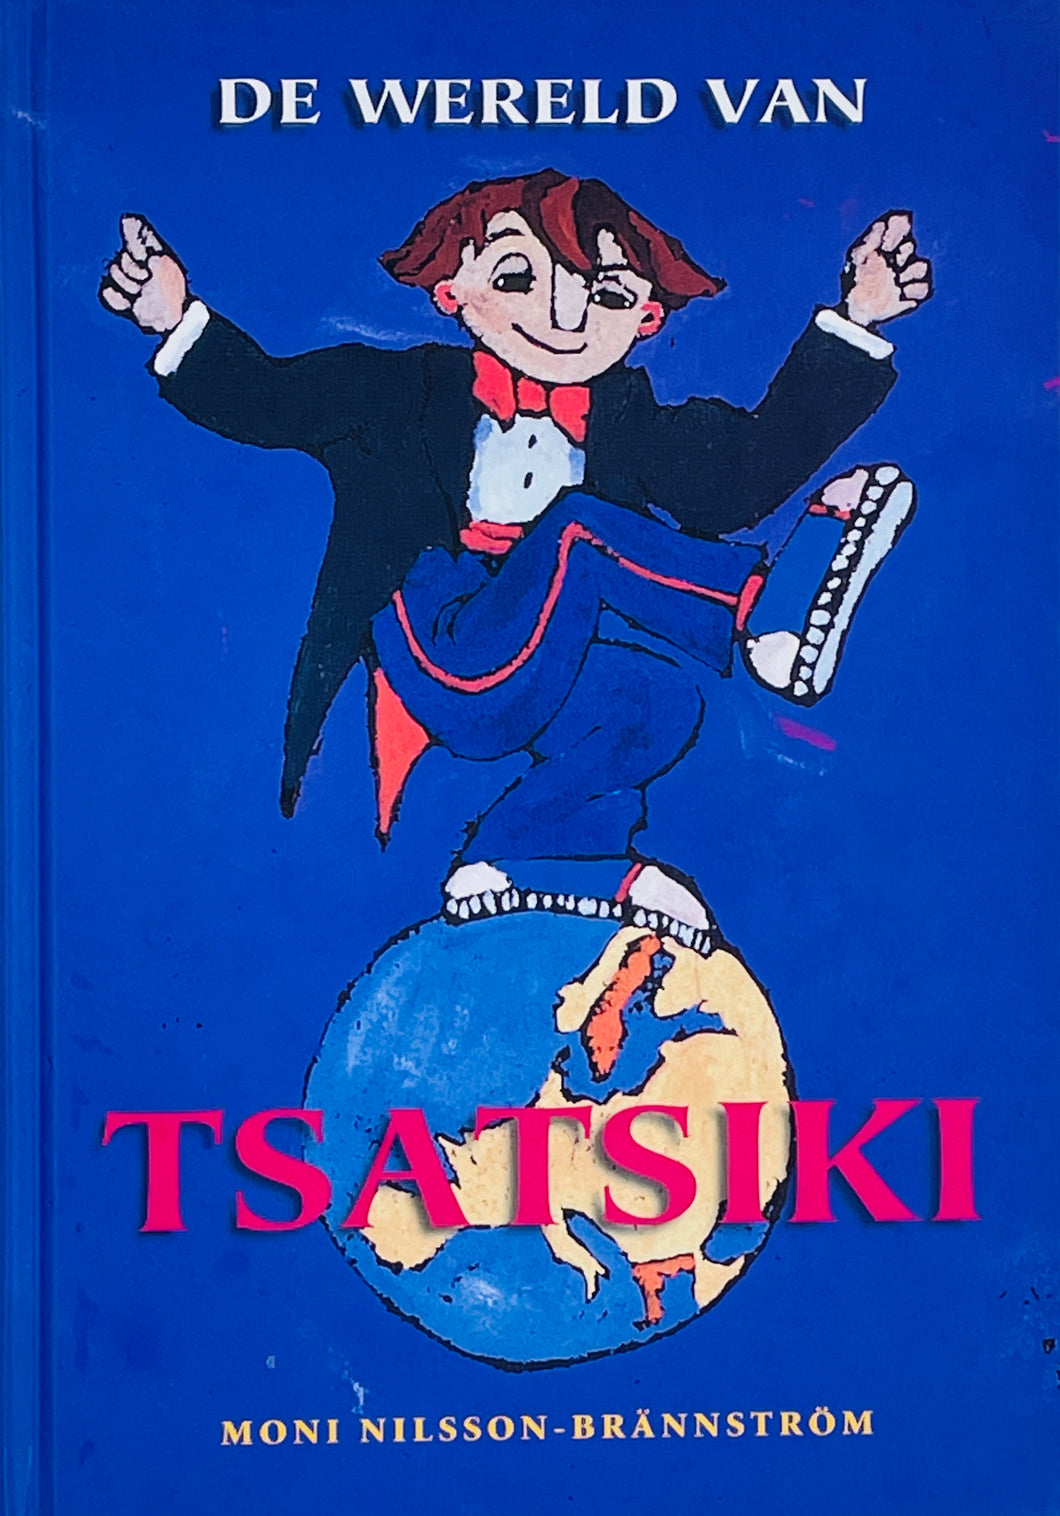 Nilsson-Brännström Moni - De wereld van Tsatsiki